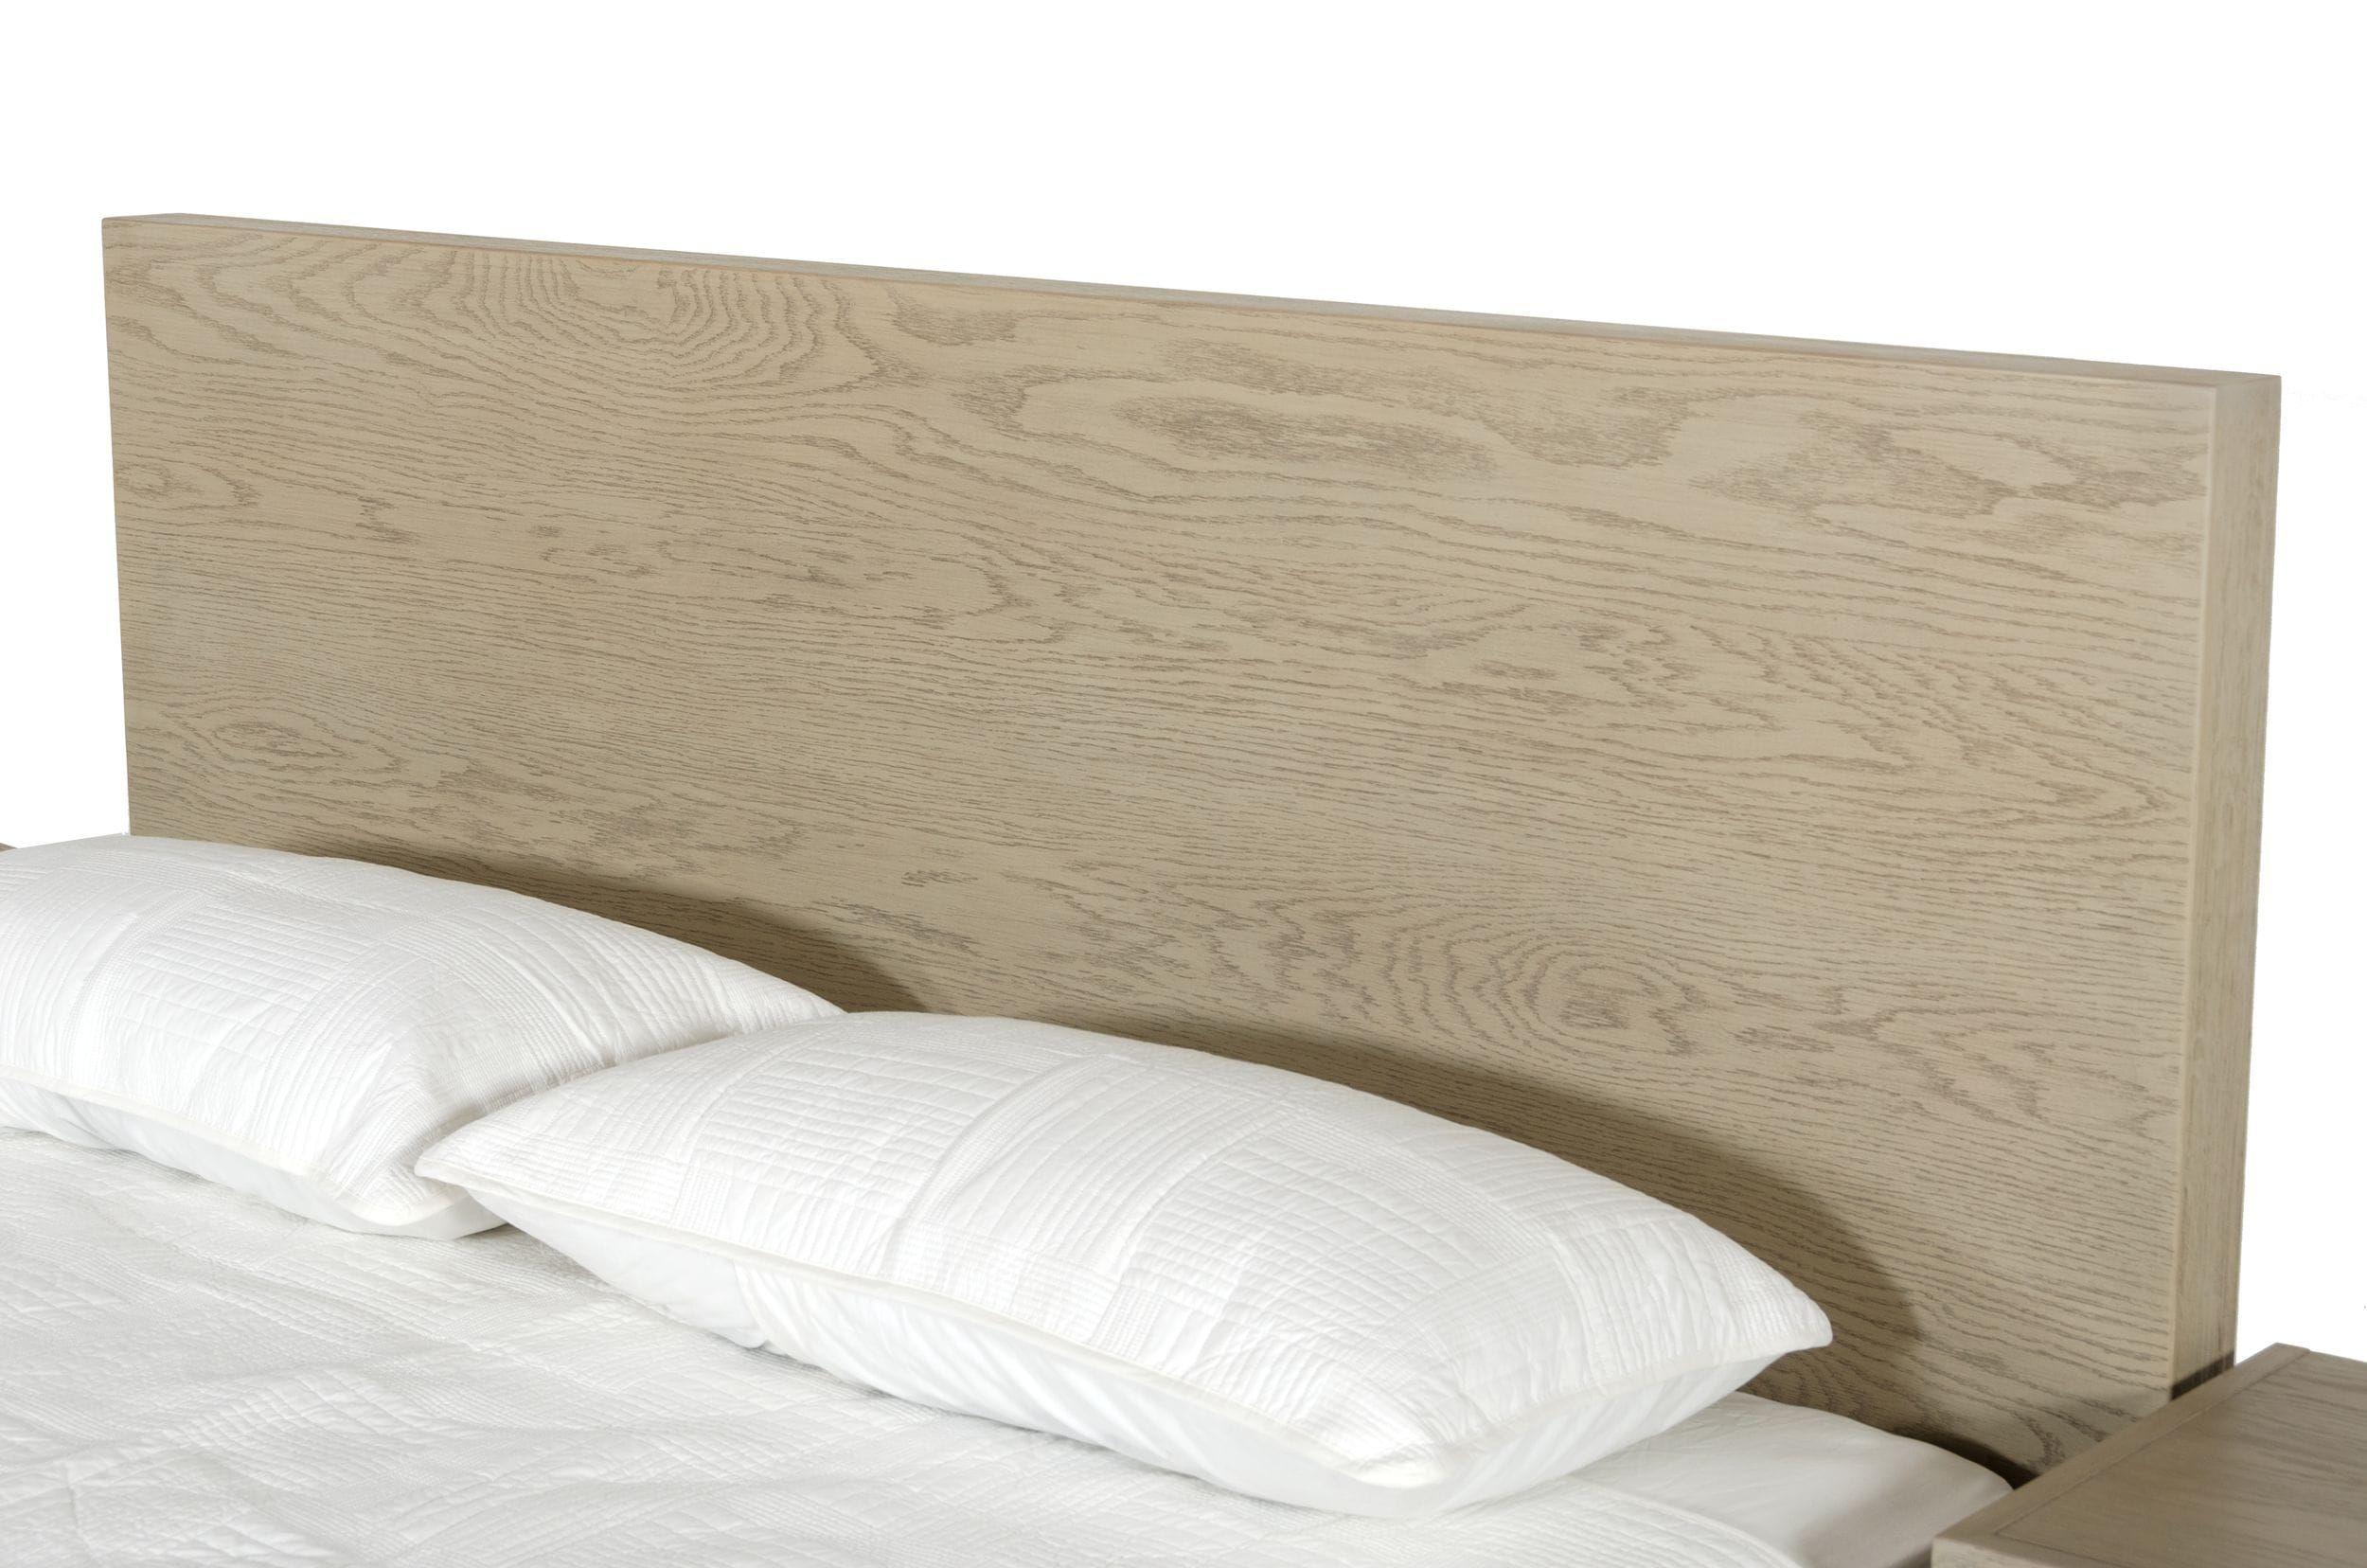 

    
Oak & Silver King Size Panel Bed by VIG Modrest Samson
